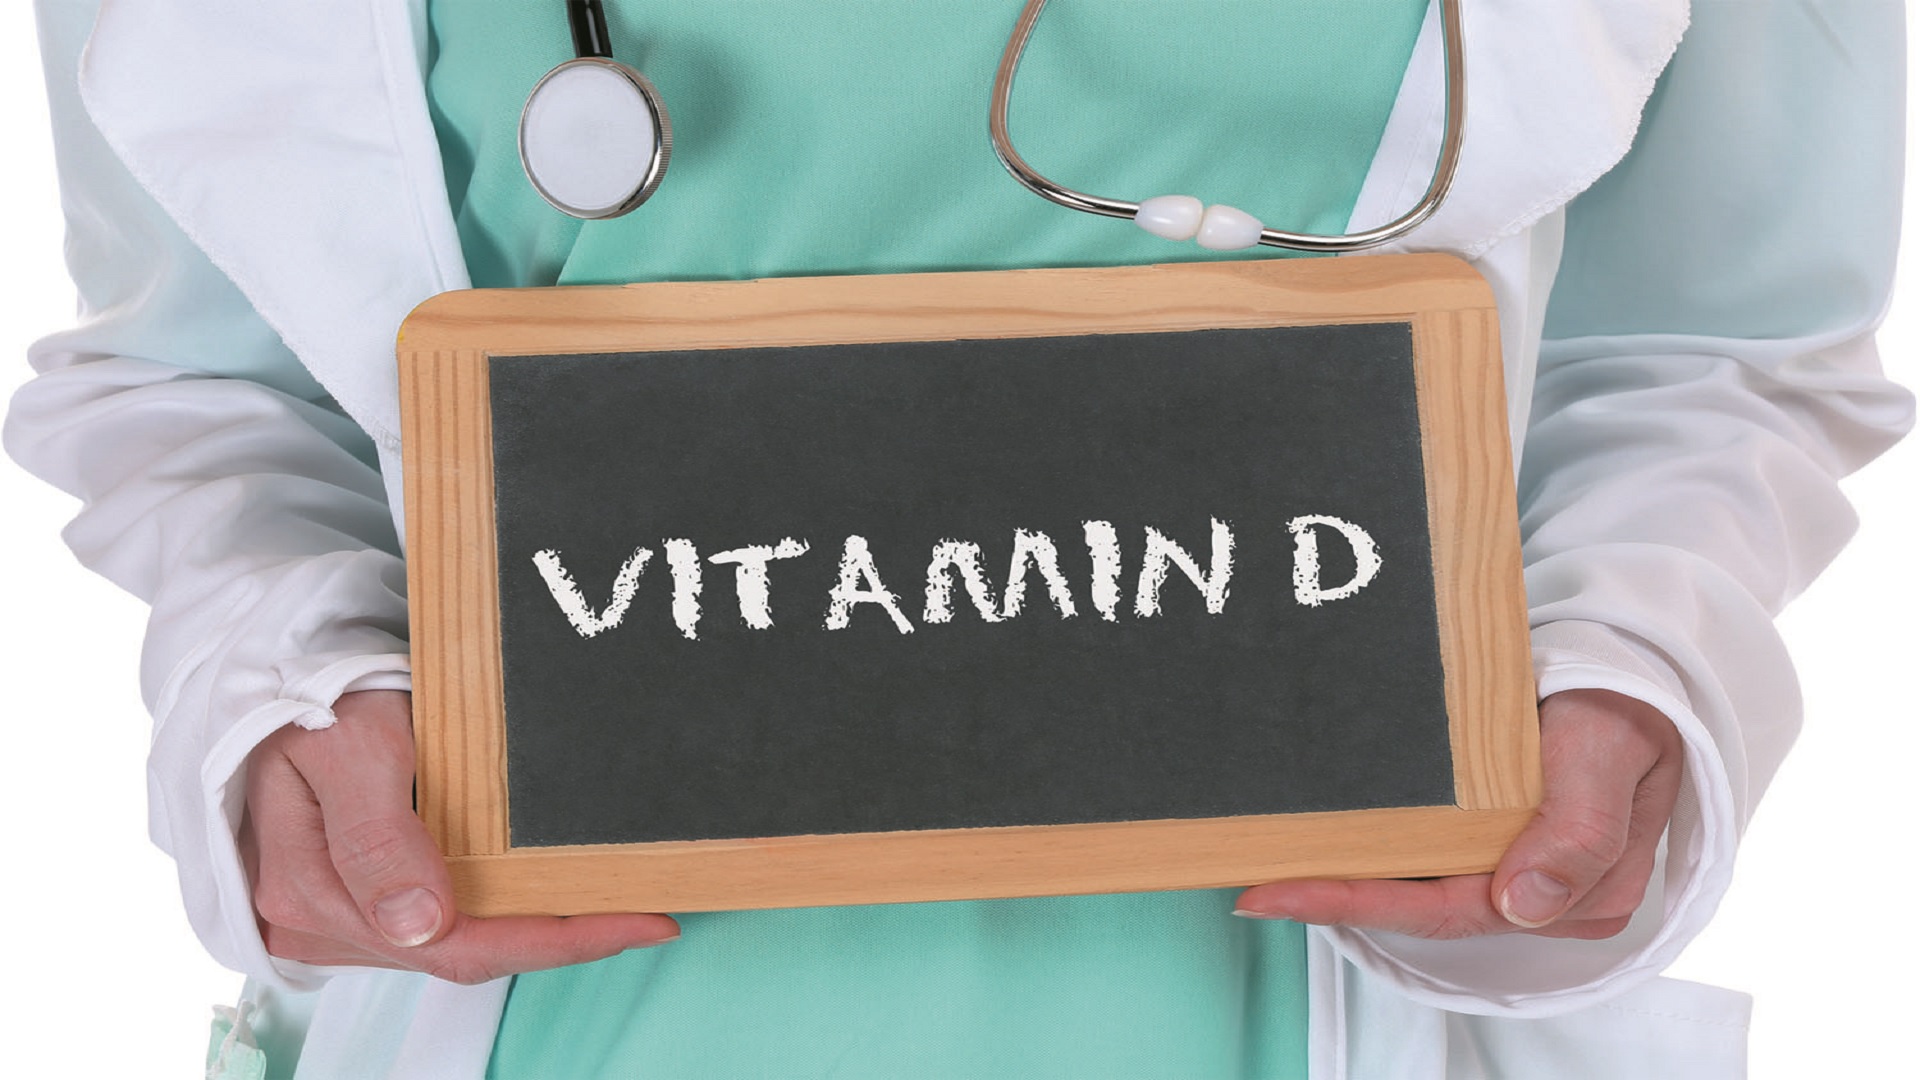 Η βιταμίνη D φαίνεται να παίζει ρόλο στα ποσοστά θνησιμότητας COVID-19